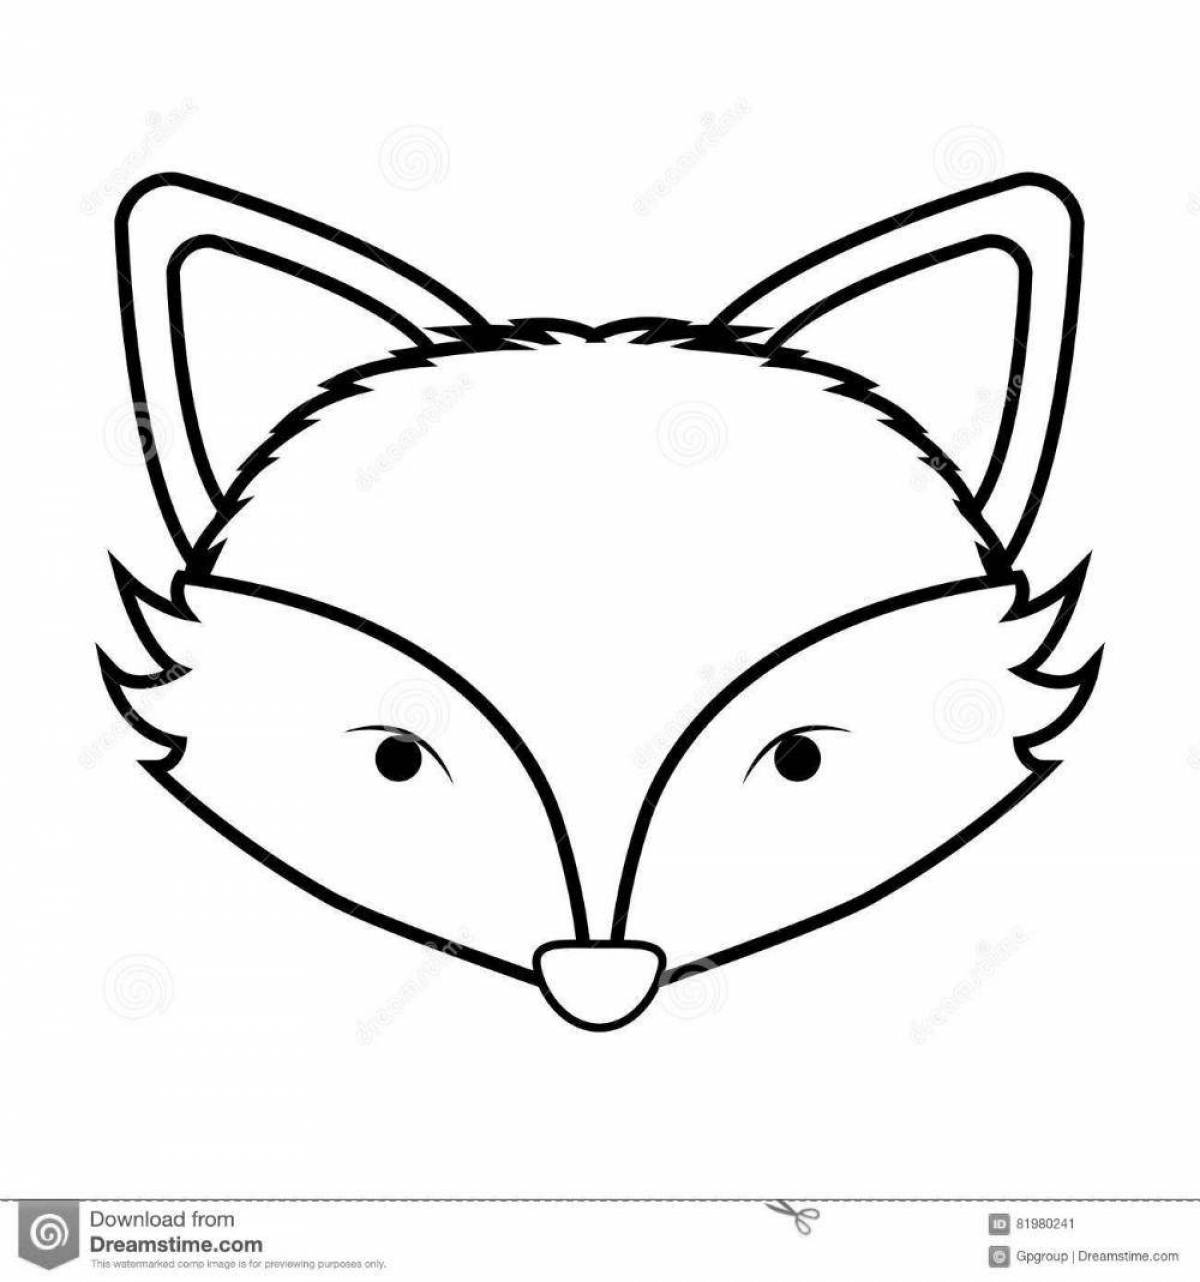 Adorable fox face coloring book